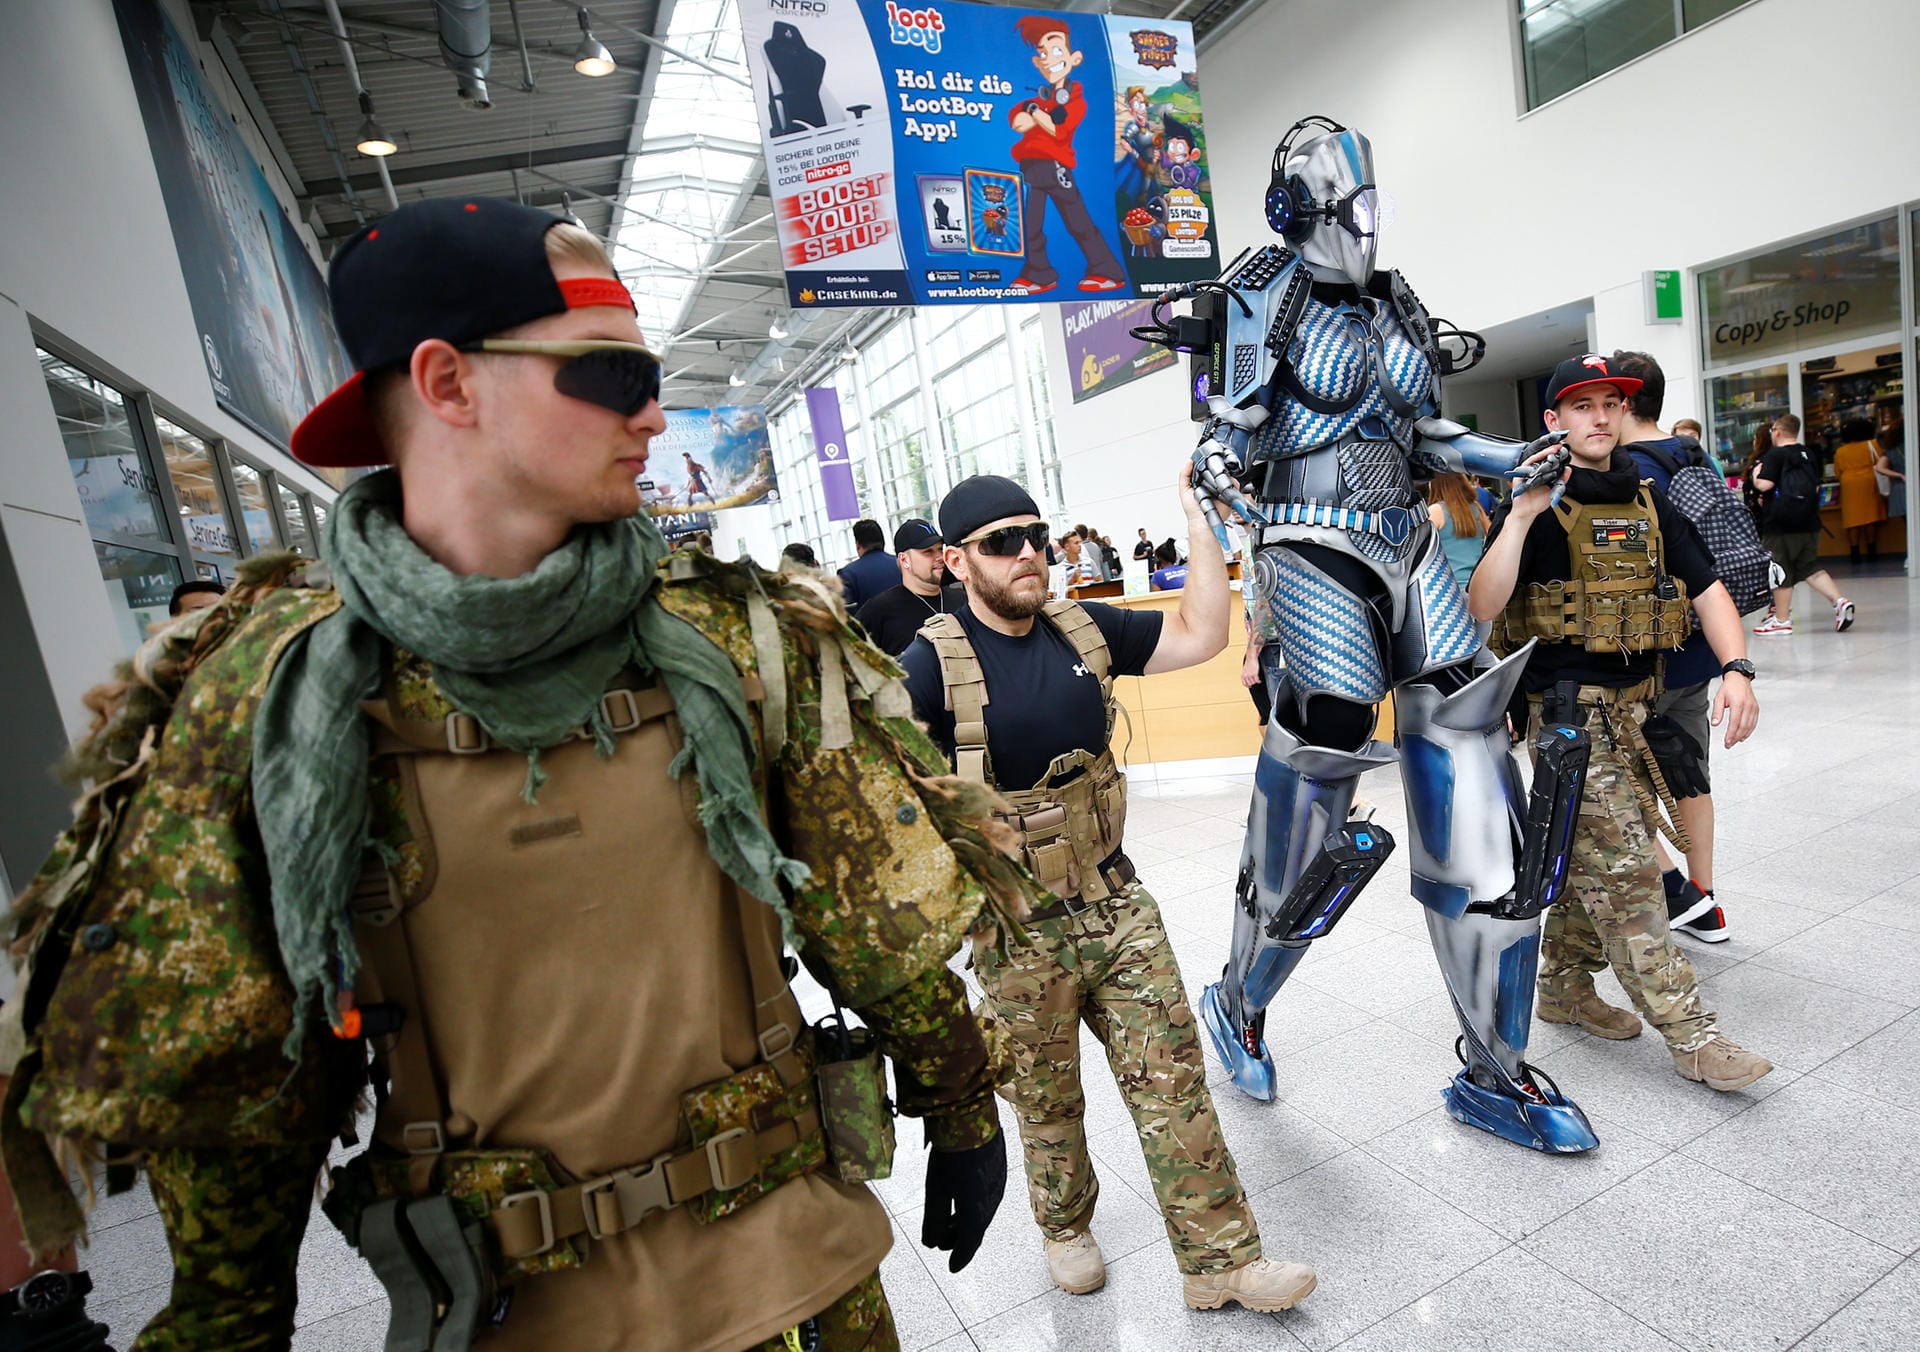 Auch dieses Jahr sind auf der Gamescom wieder viele sogenannte Cosplayer unterwegs – Menschen, die sich unter anderem als Figuren aus Videospielen, Filmen oder Comics verkleiden.